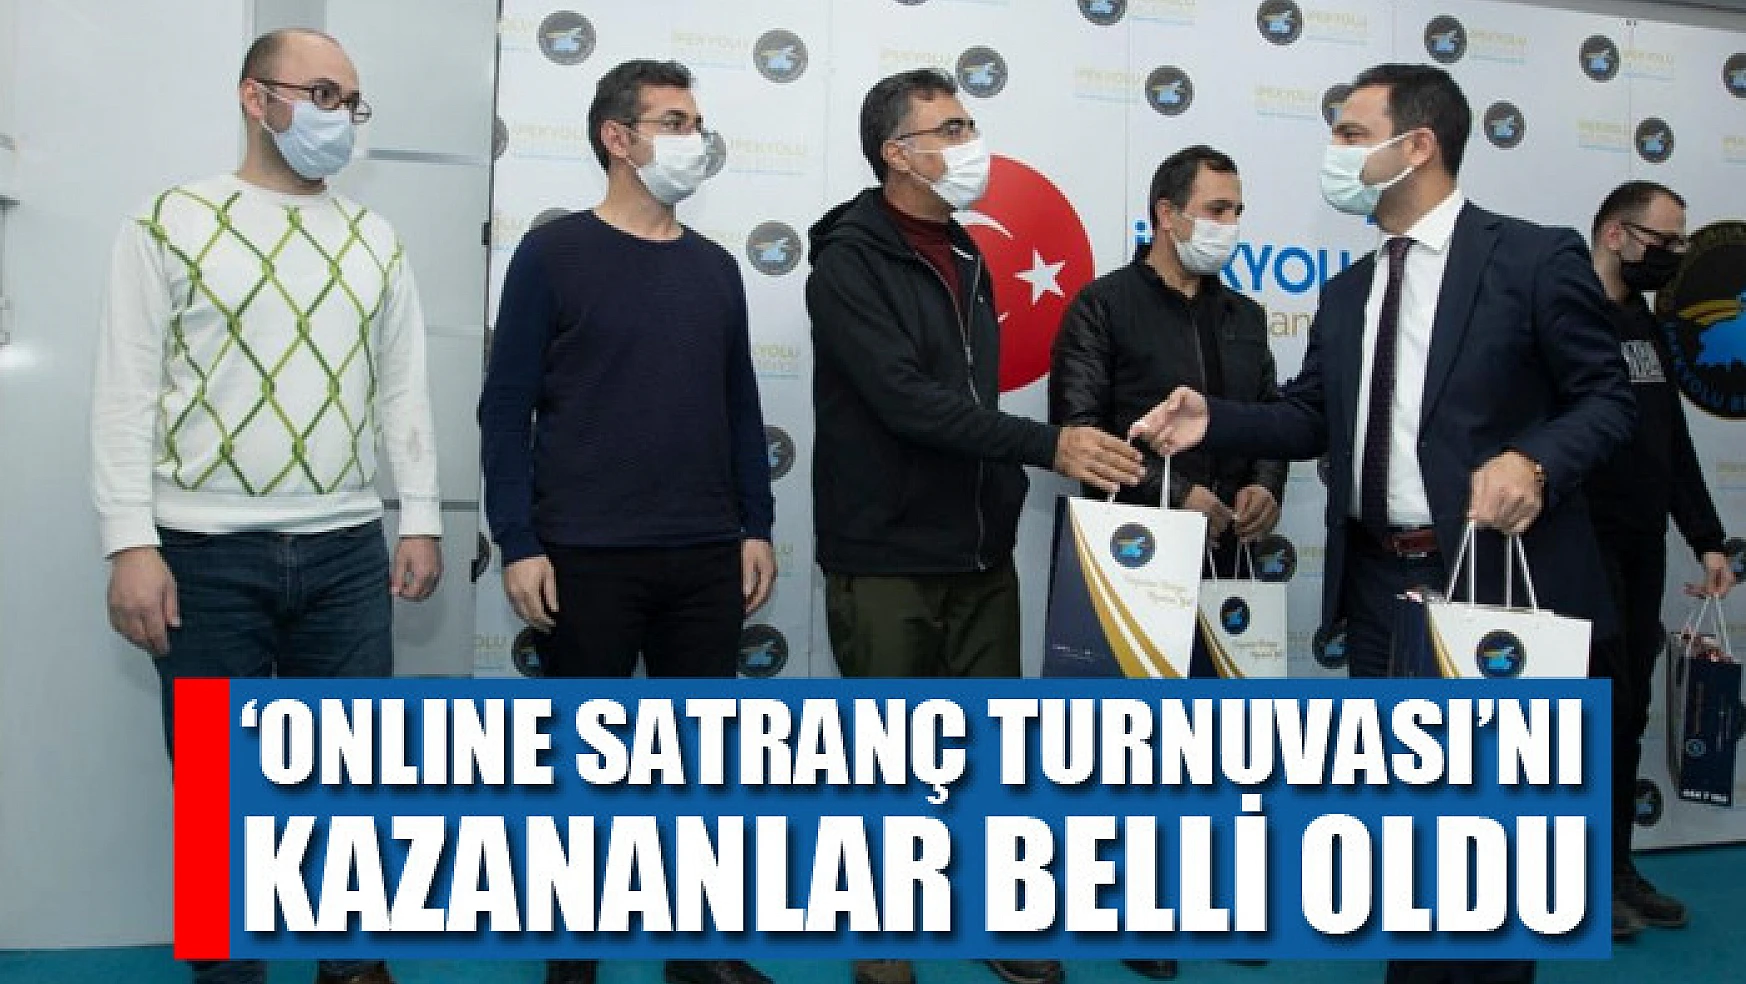 İpekyolu Belediyesinin 'Onlıne Satranç Turnuvası'nı kazananlar belli oldu